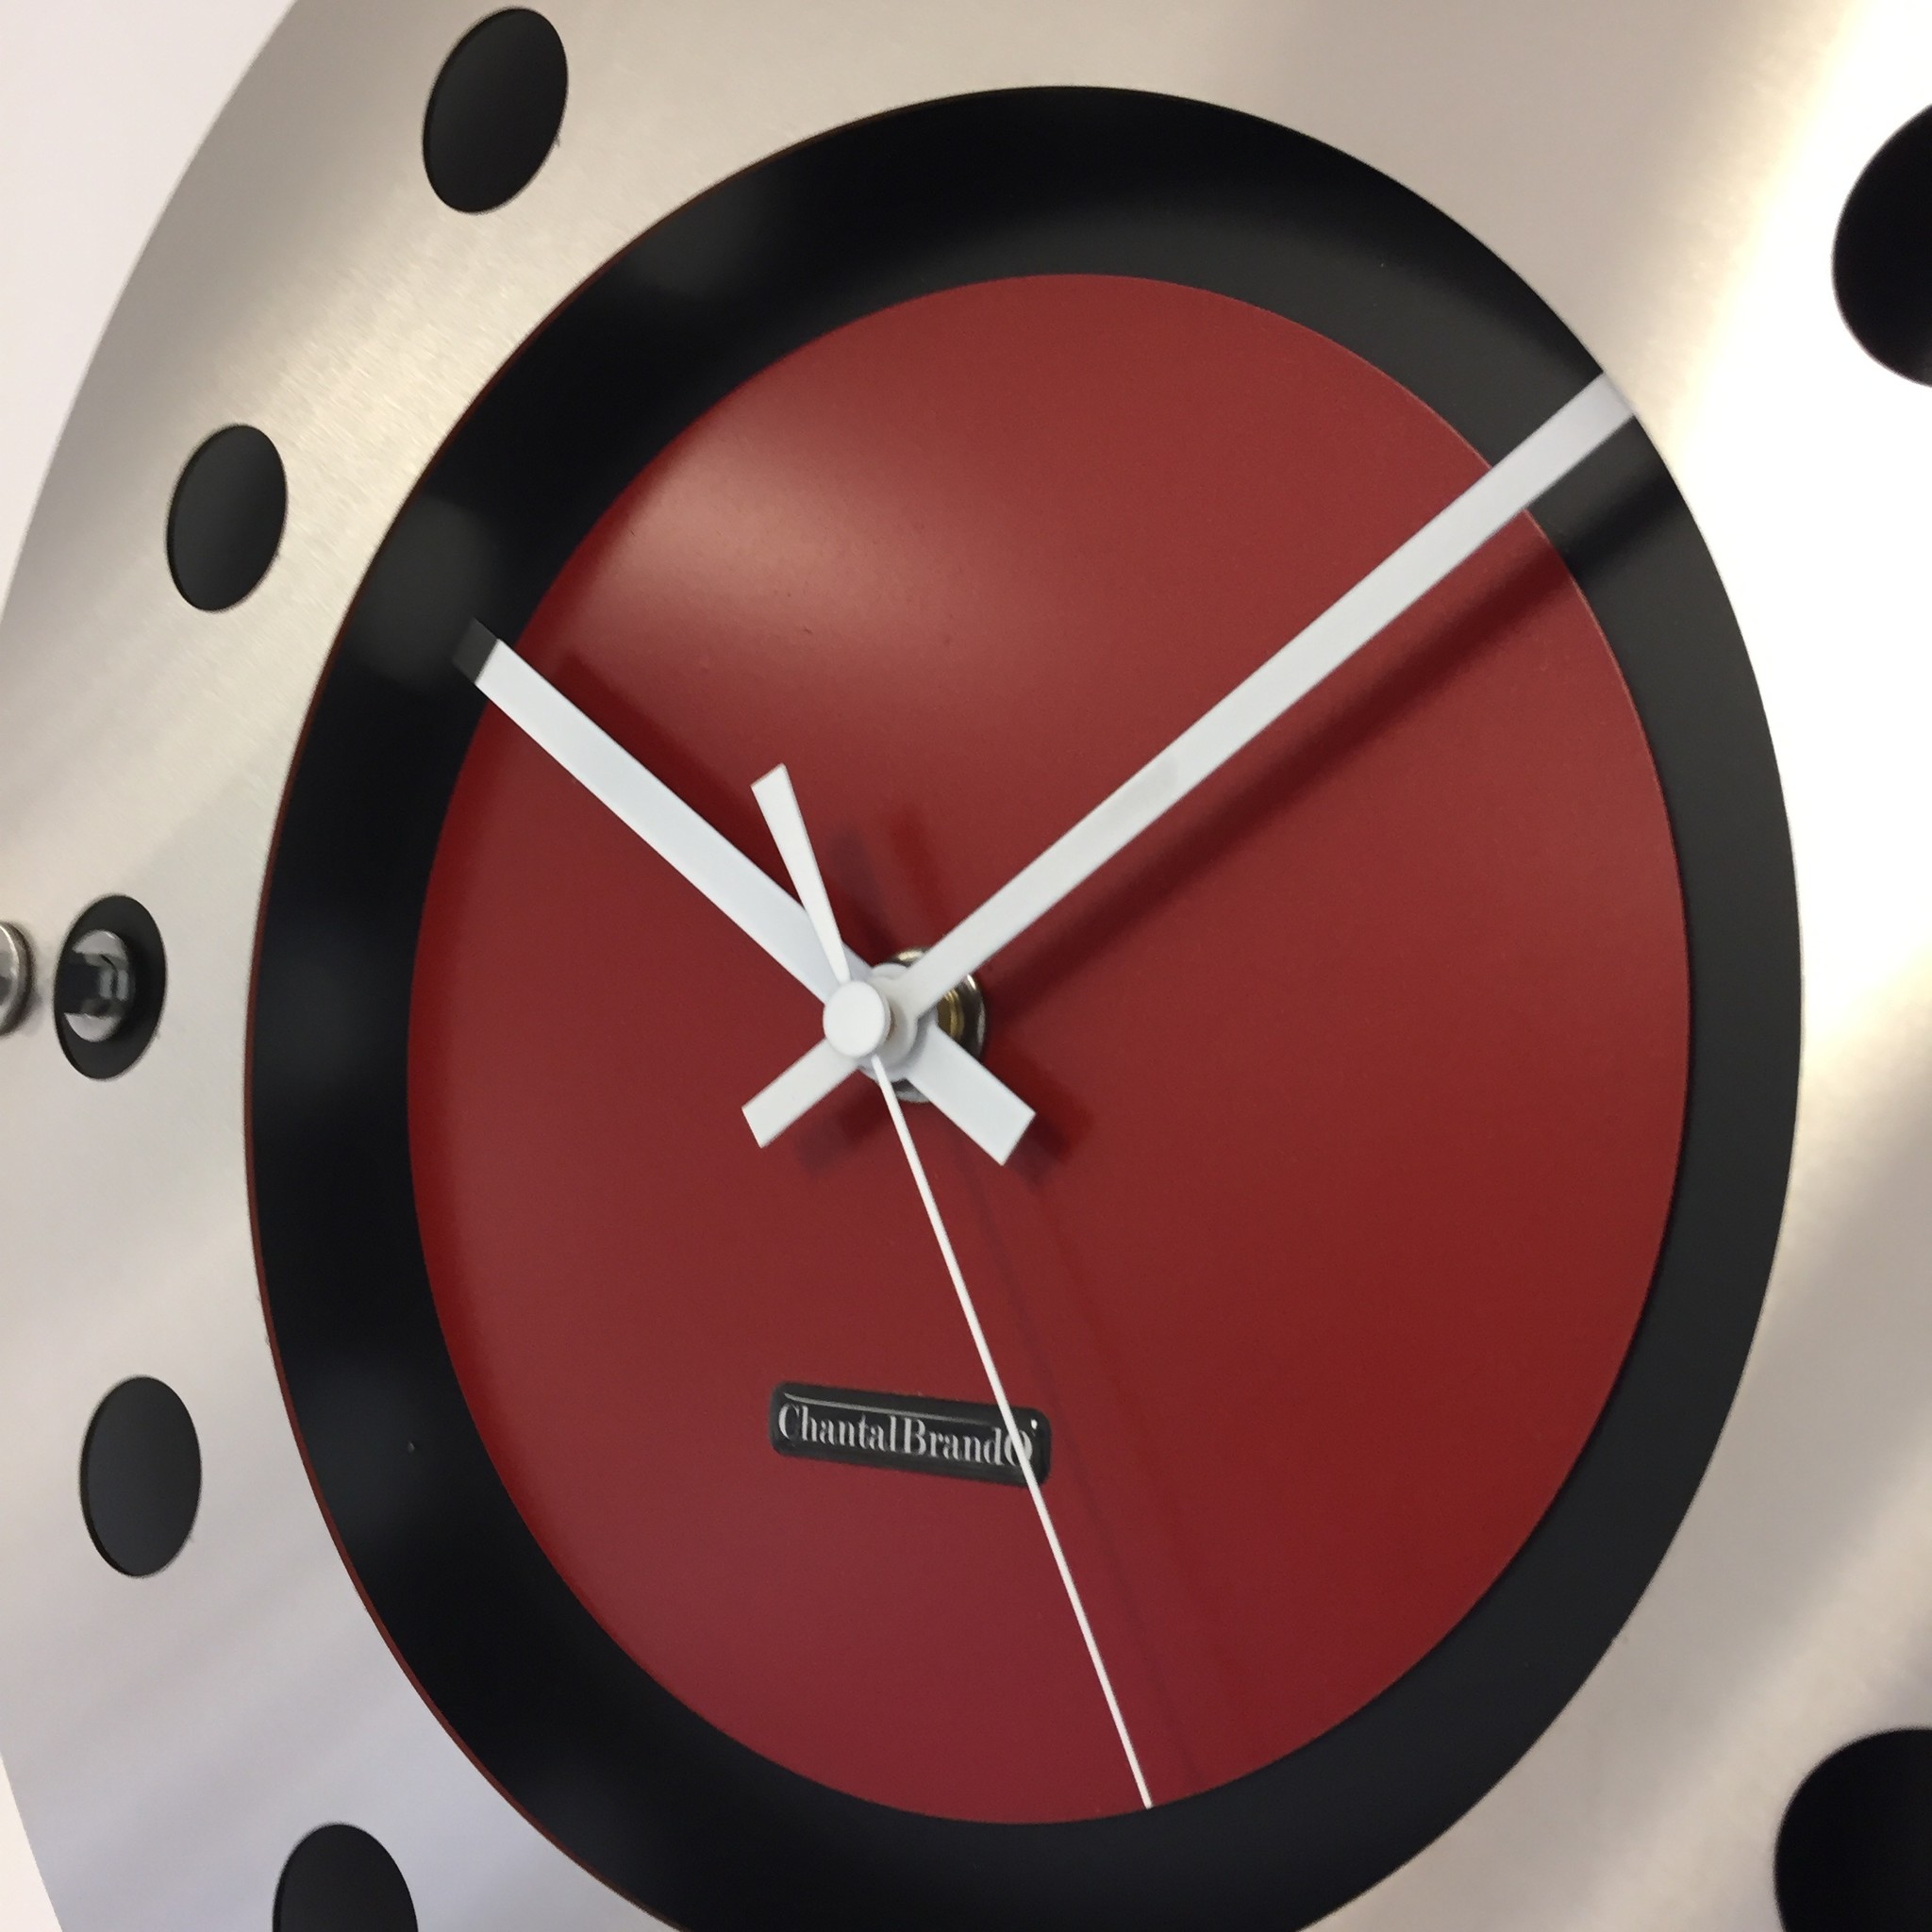 ChantalBrandO Design - Wanduhr mecanica komplett schwarz mit rot farbe kleine innen kreis weiss pointer modern holländisch design handgefertigt 40 cm